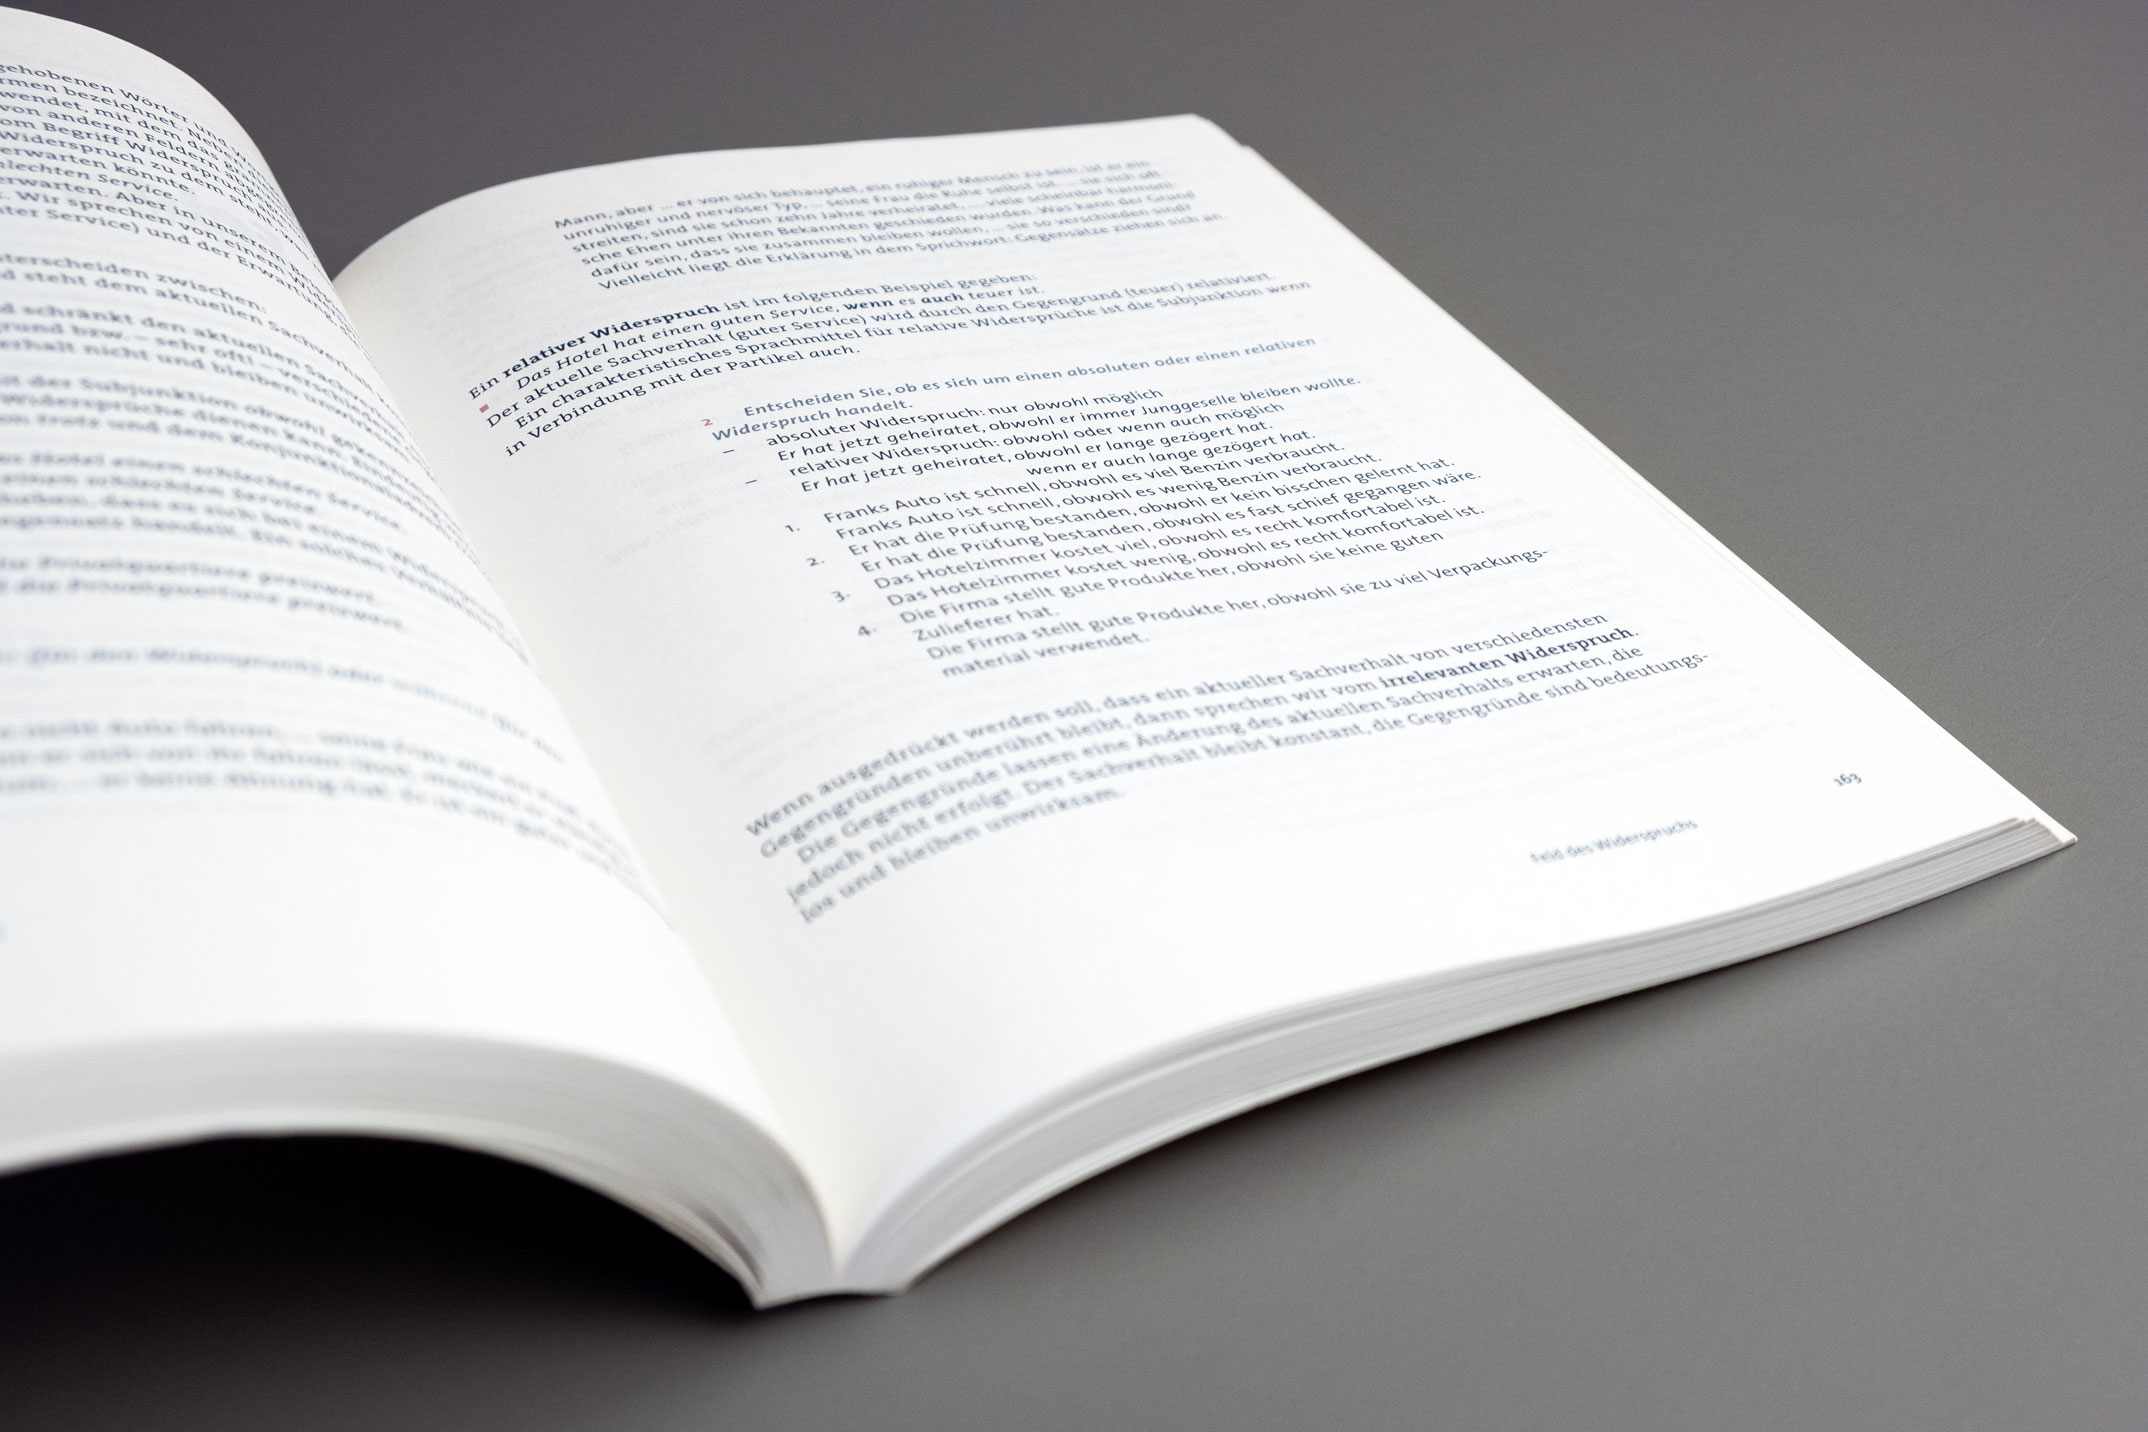 Didaktische Buchgestaltung, typografische Hierarchie 1, Feld des Widerspruchs, Lehrwerk Grammatik in Feldern, Verlag für Deutsch München